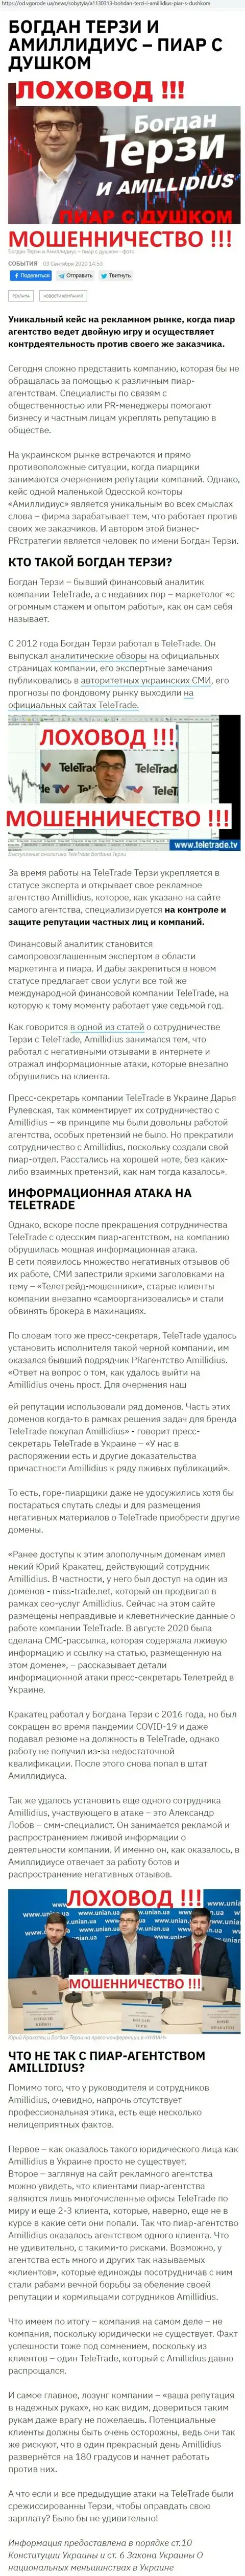 Богдан Терзи рискованный партнер, информация со слов уже бывшего работника пиар компании Амиллидиус